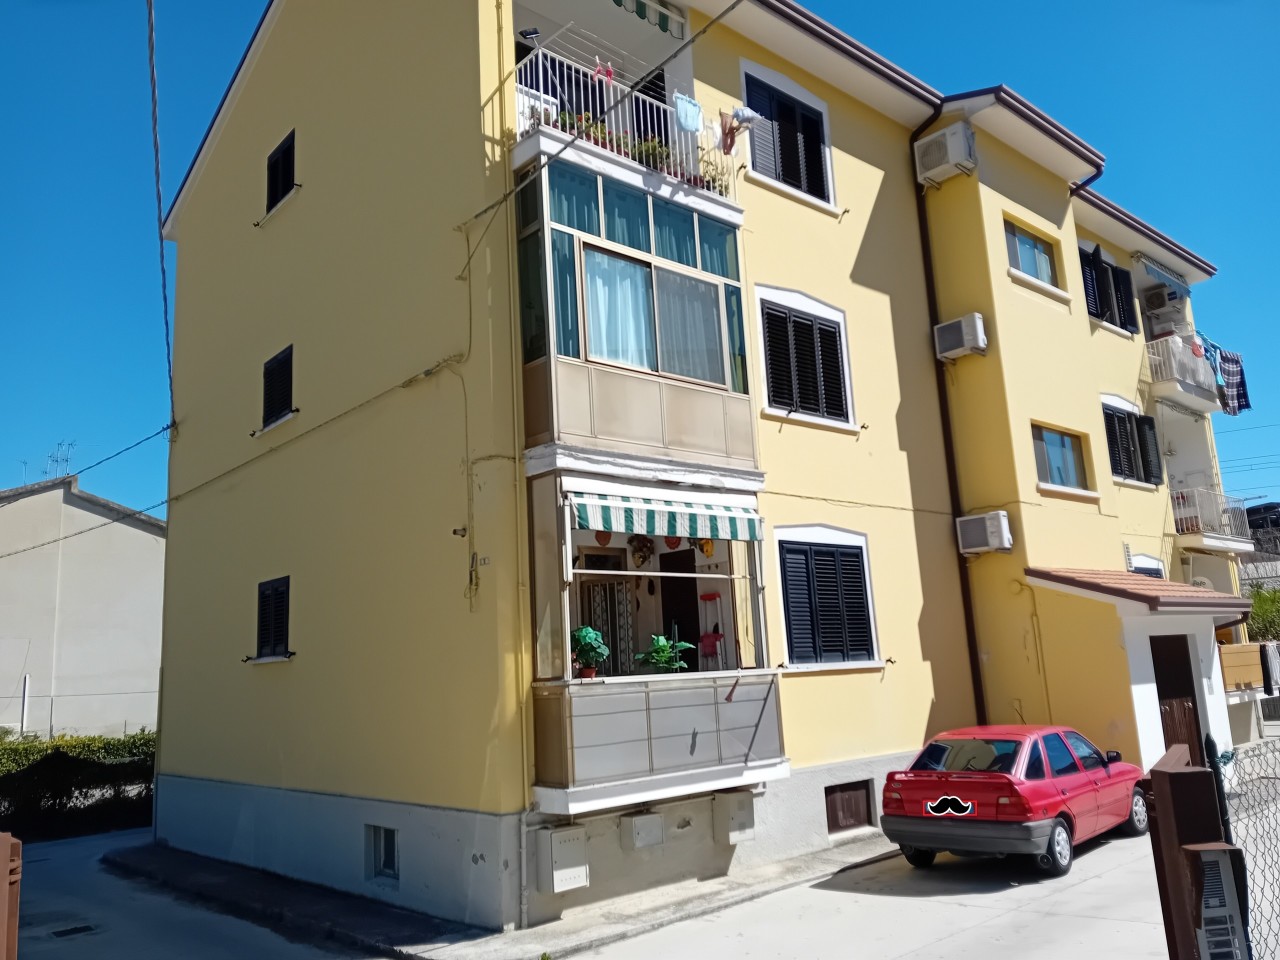 Appartamento in vendita a Bolognano, 6 locali, prezzo € 60.000 | PortaleAgenzieImmobiliari.it